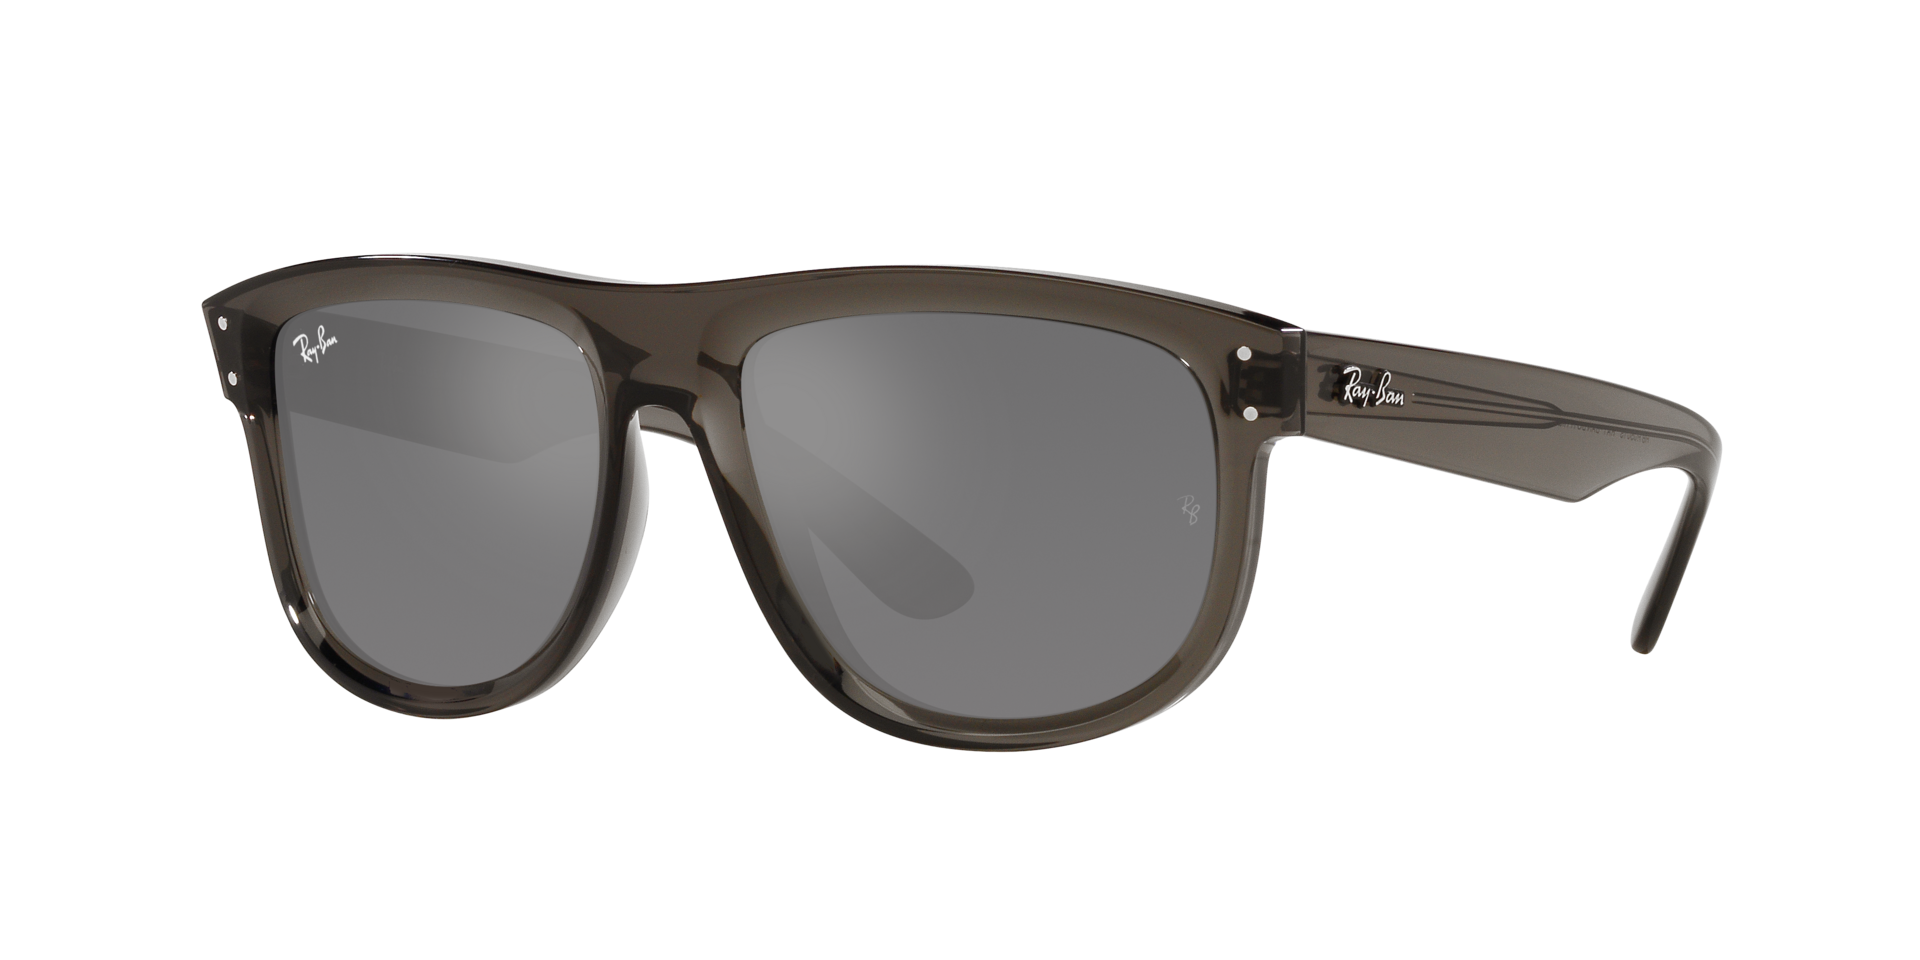 Das Bild zeigt die Sonnenbrille RBR0501S 6707GS von der  Marke Ray Ban in dunkelgrau transparent